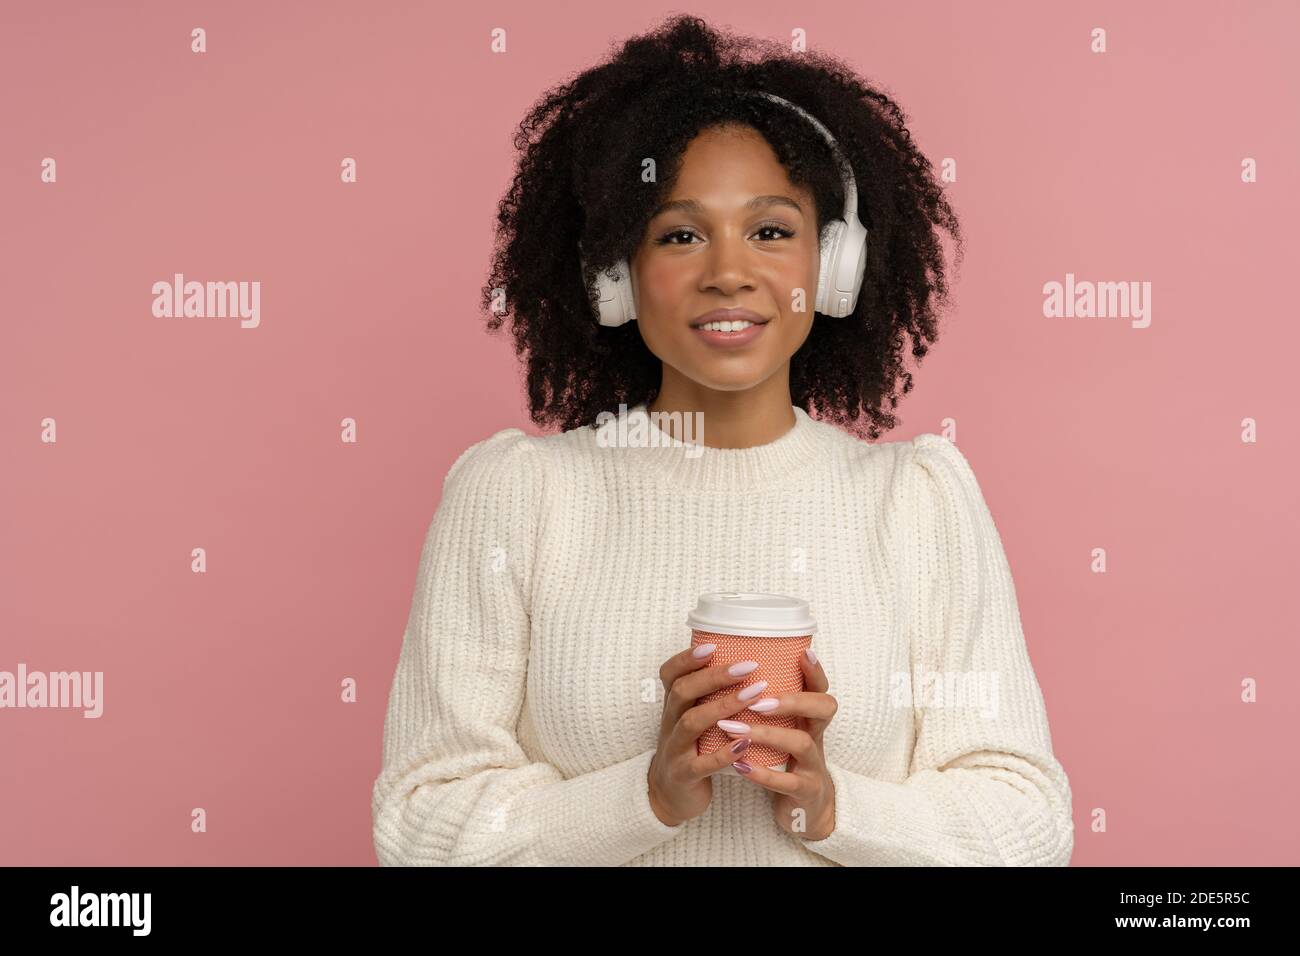 La donna millennial con pelle scura e allegra, con le cuffie, indossa un maglione bianco che guarda la macchina fotografica, tenendo una tazza di caffè caldo o un tè da asporto. Foto Stock